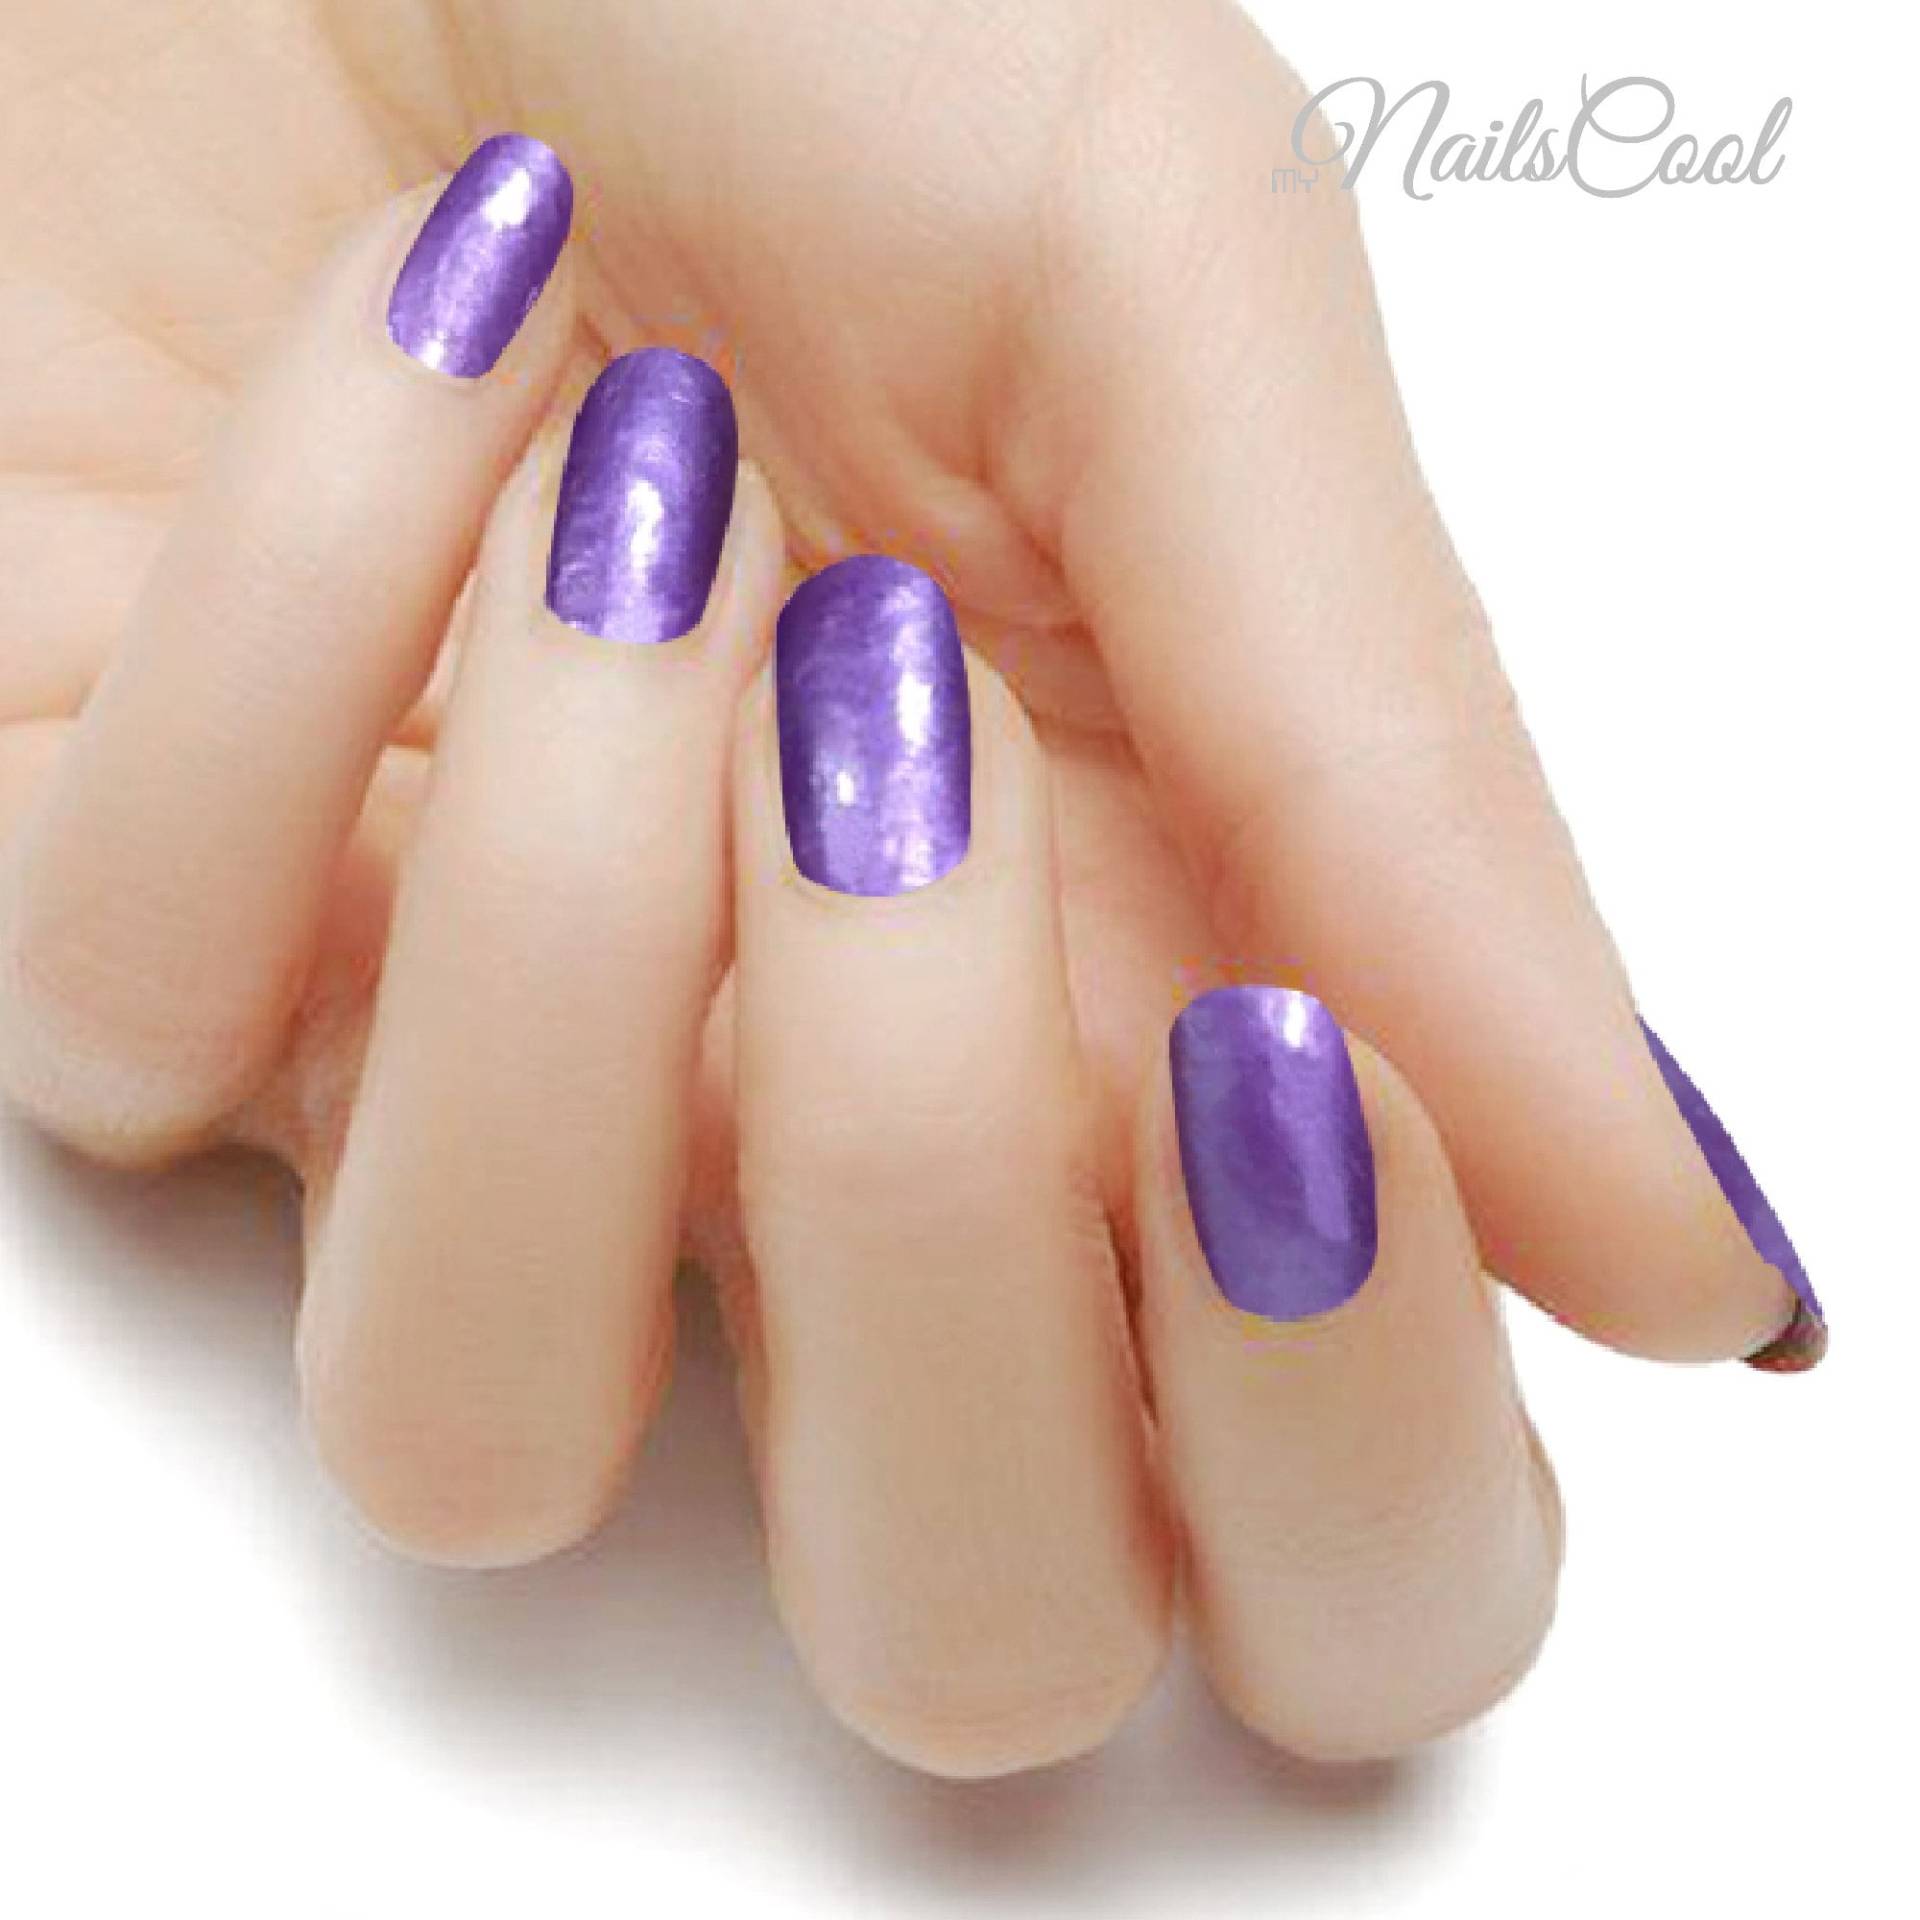 Uni Lila Farbe Violett Perlmutt Echte Nagellack Streifen Nailart Wraps Street Art 18 Strips von myNailsCool